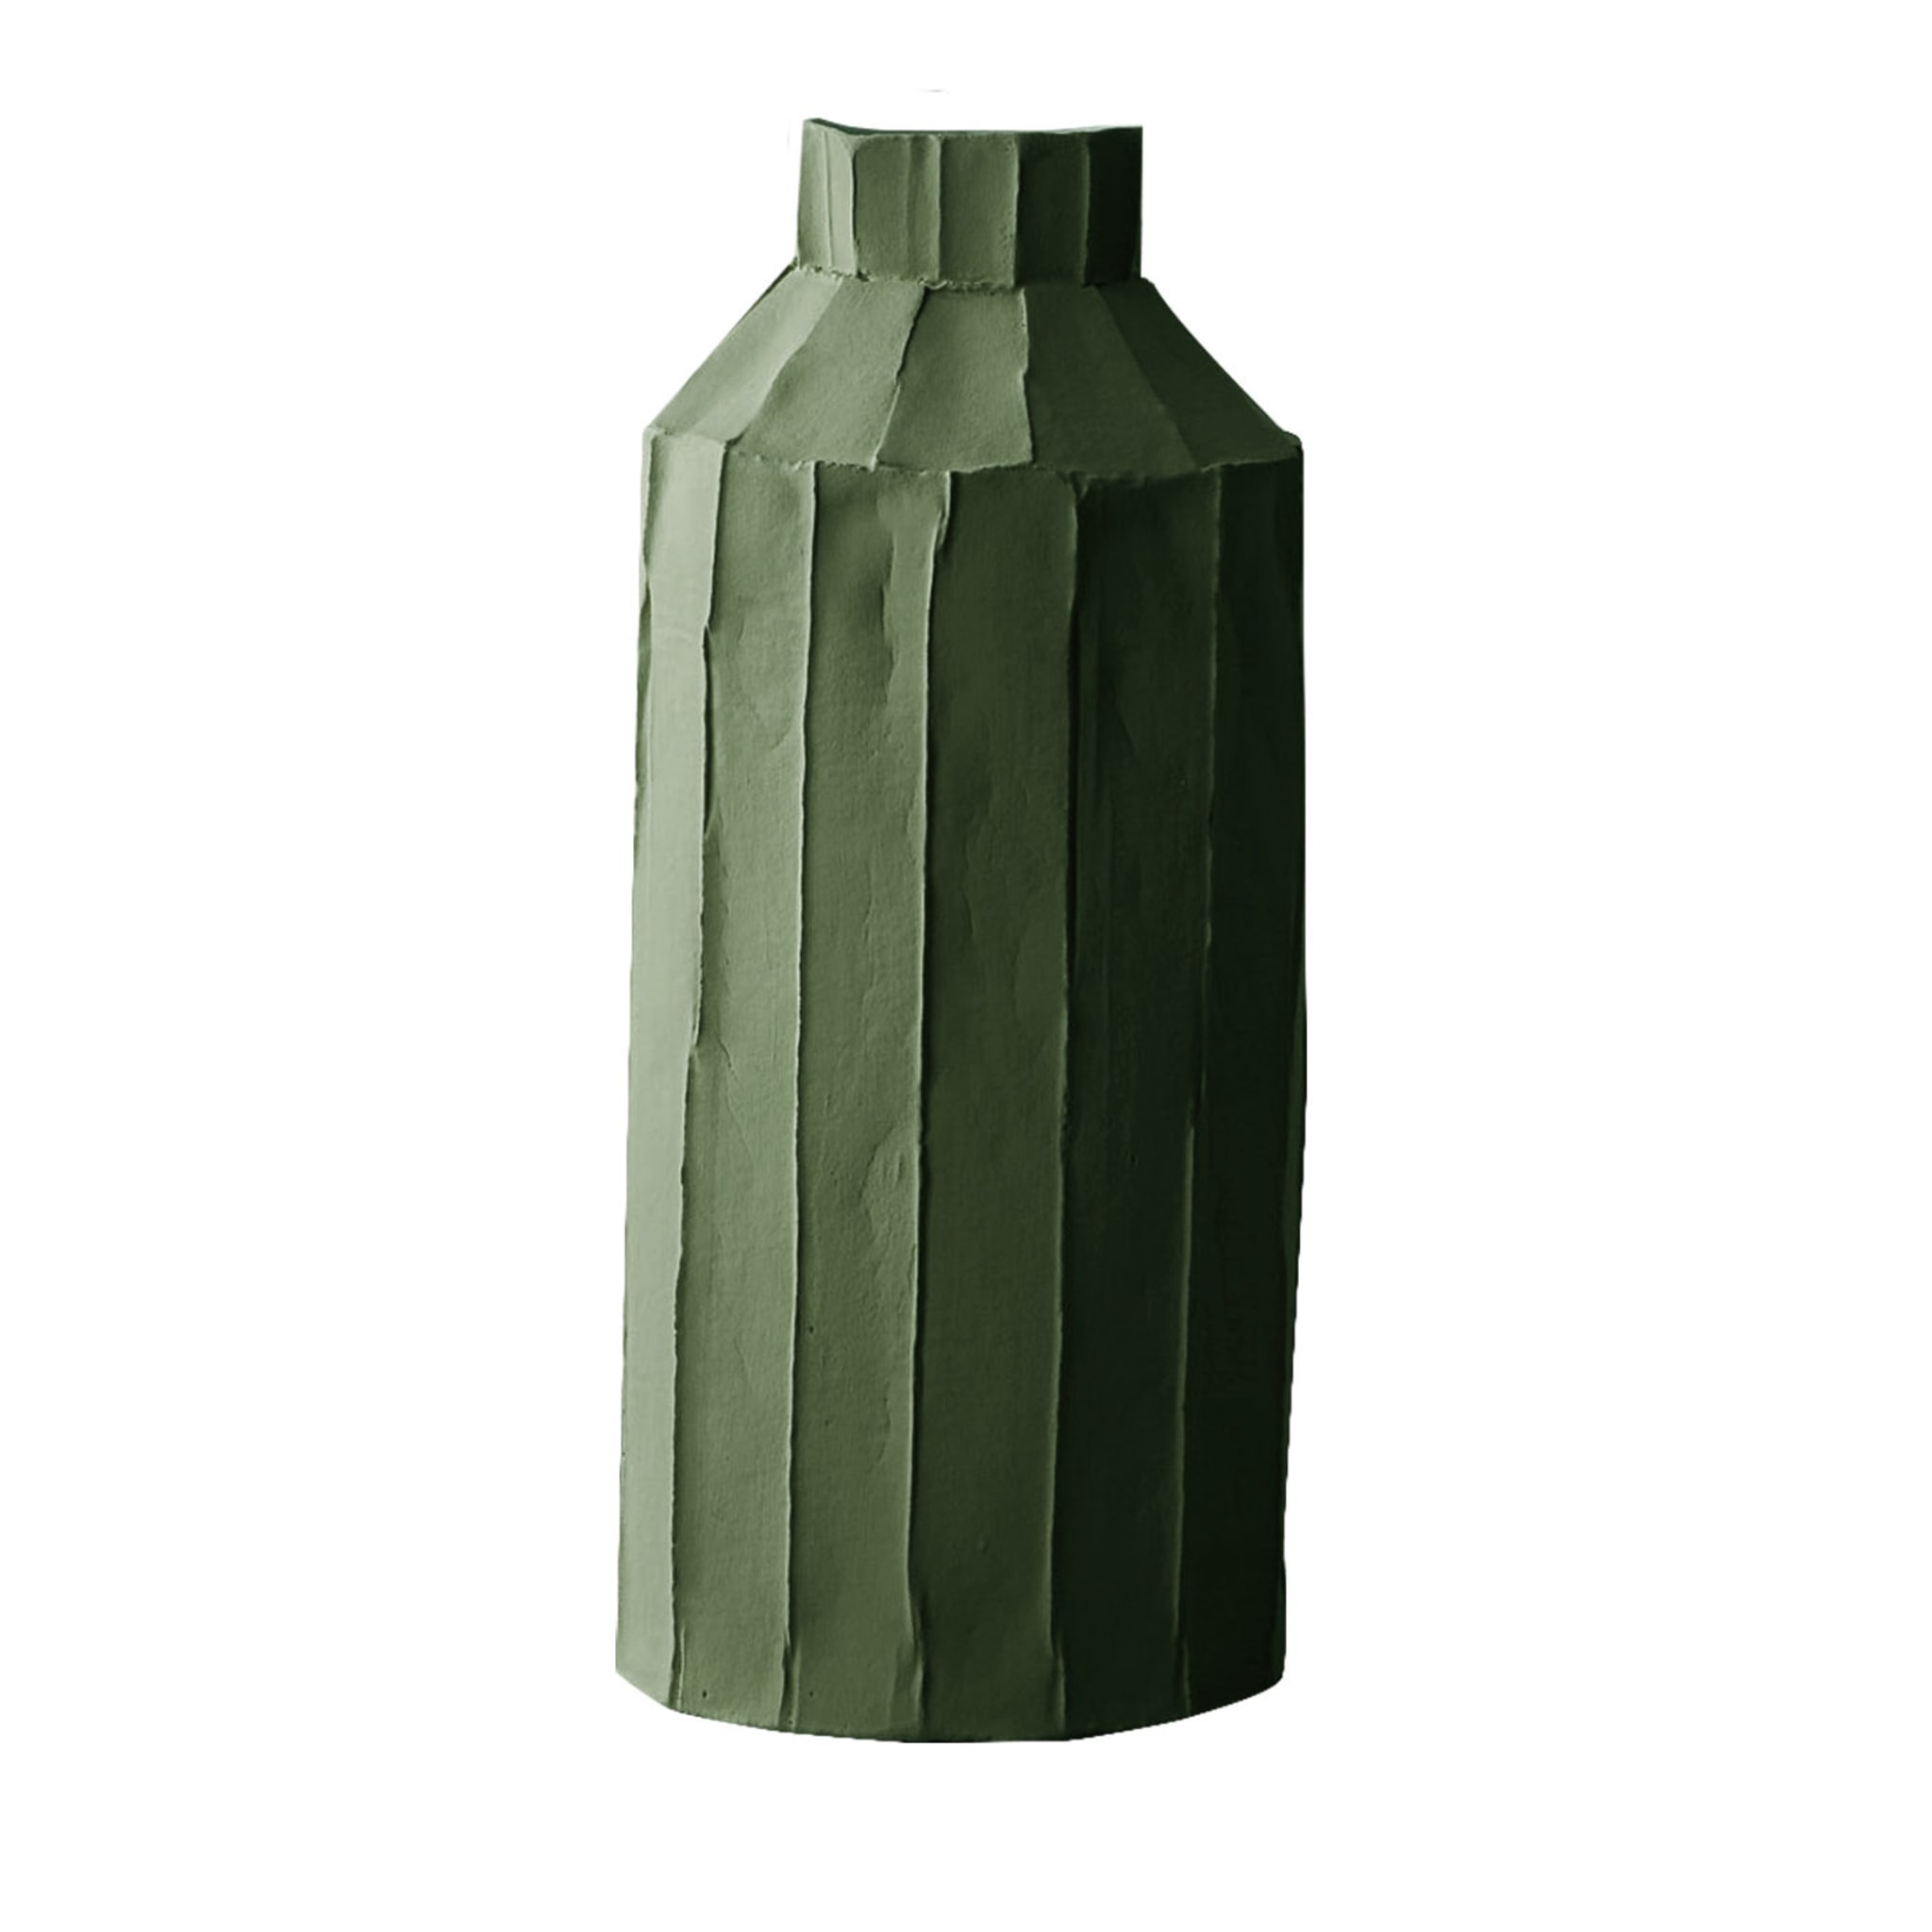 Cartocci Corteccia Fide Sage Green Vase - Main view